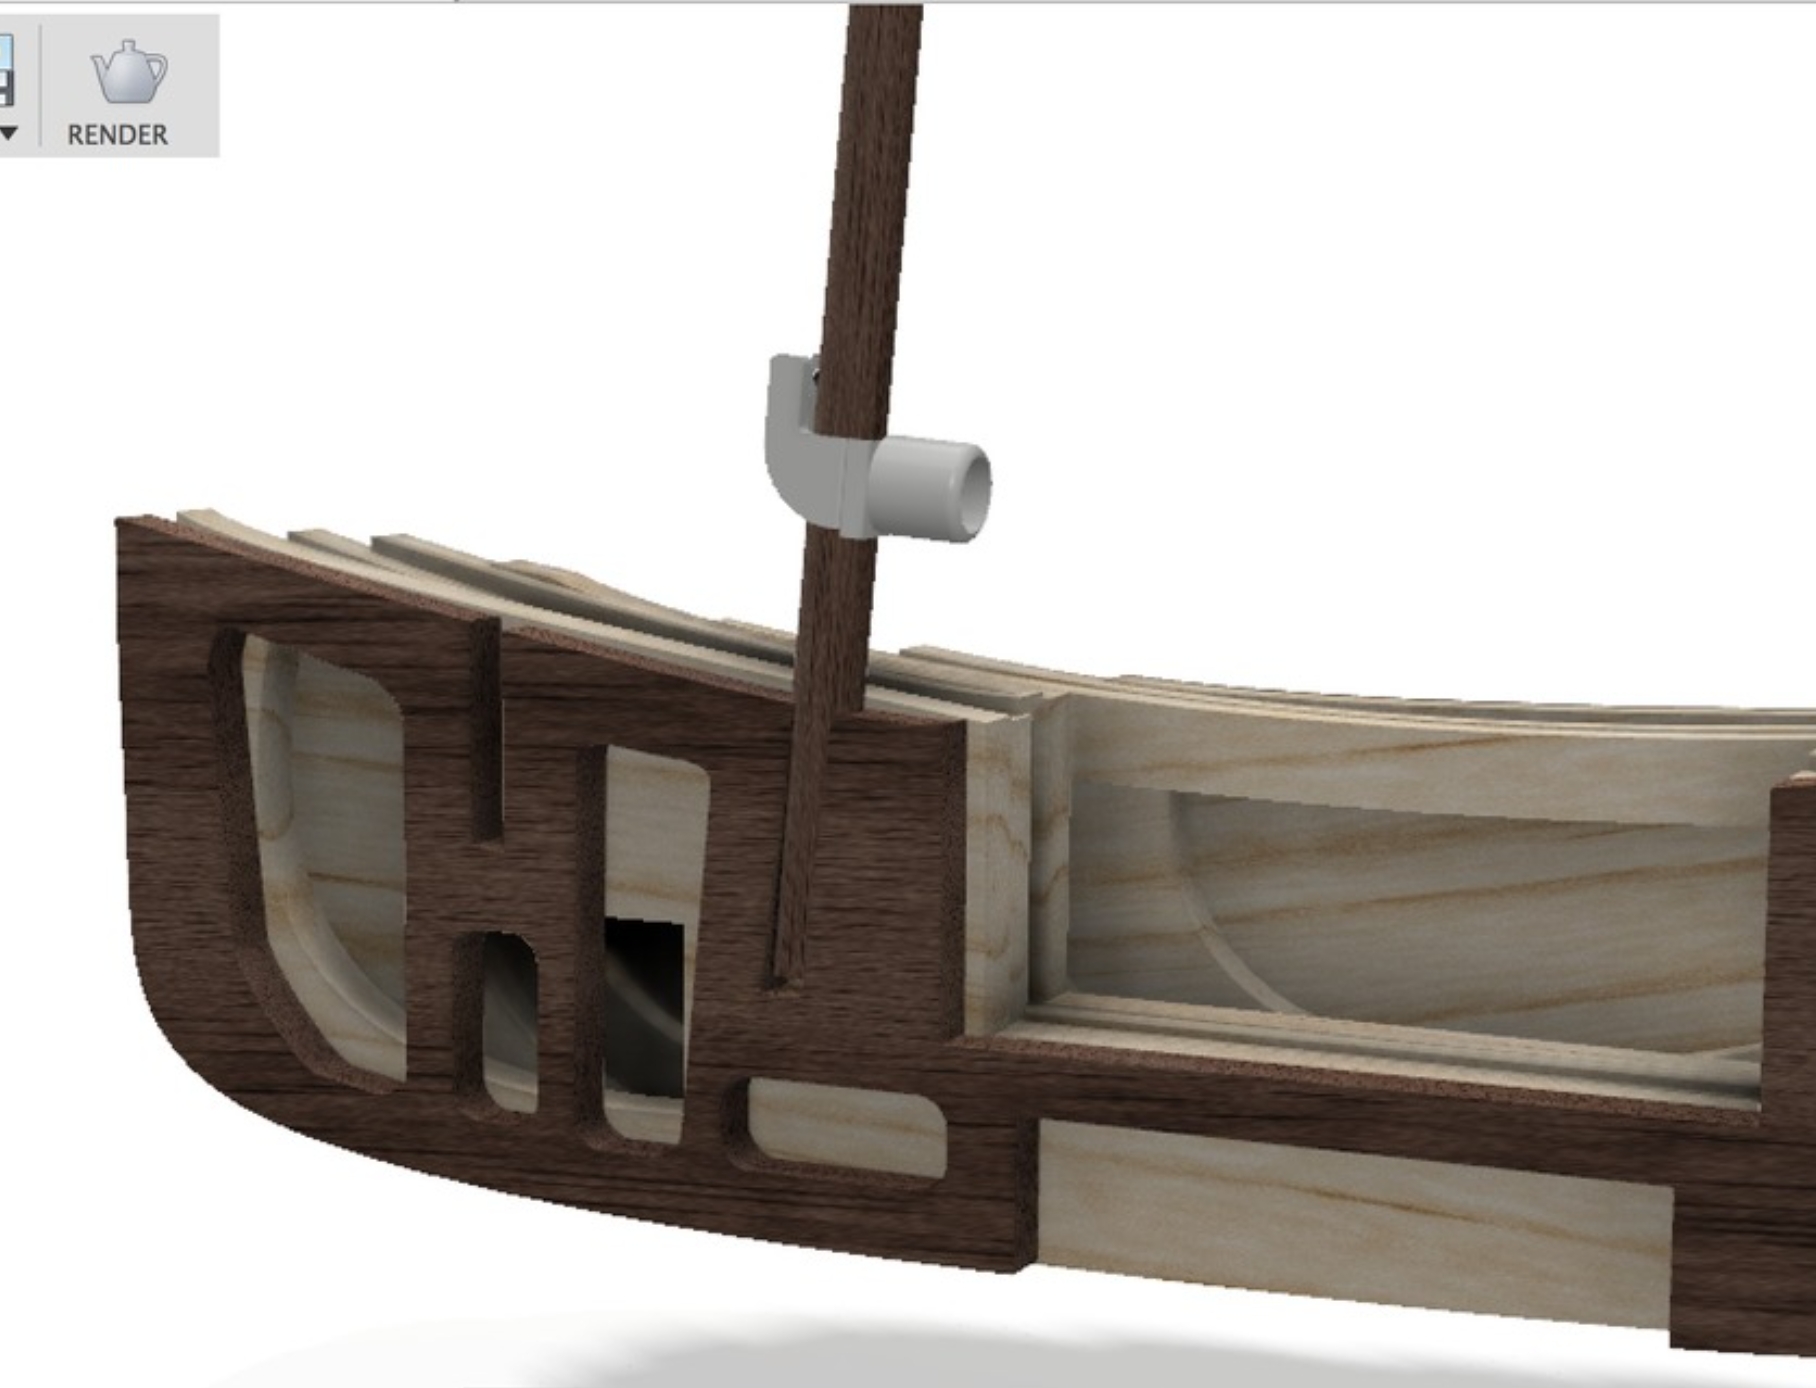 Gooseneck for model boats